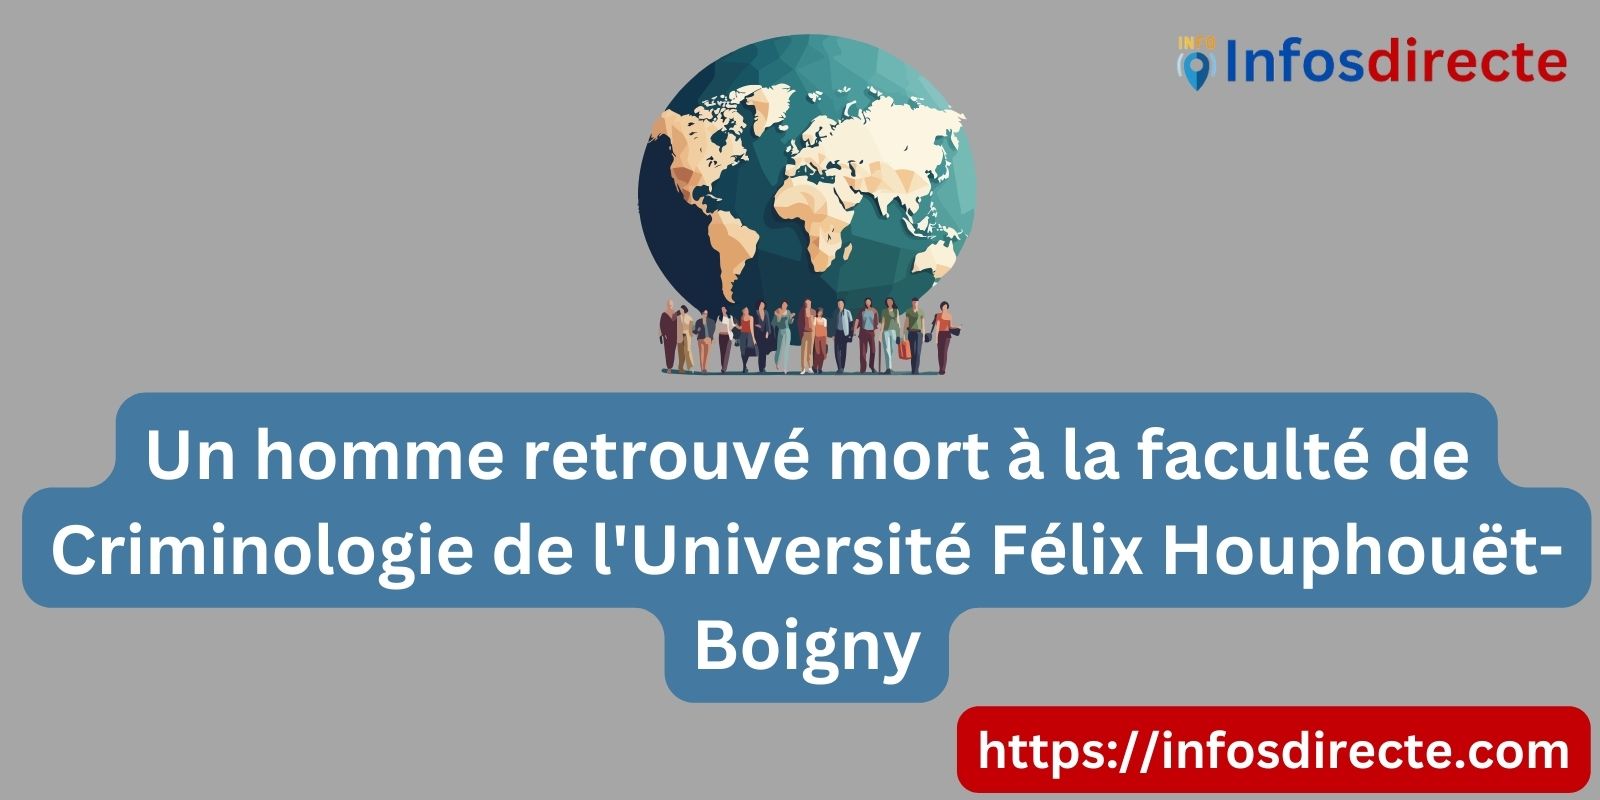 Un homme retrouvé mort à la faculté de Criminologie de l'Université Félix Houphouët-Boigny